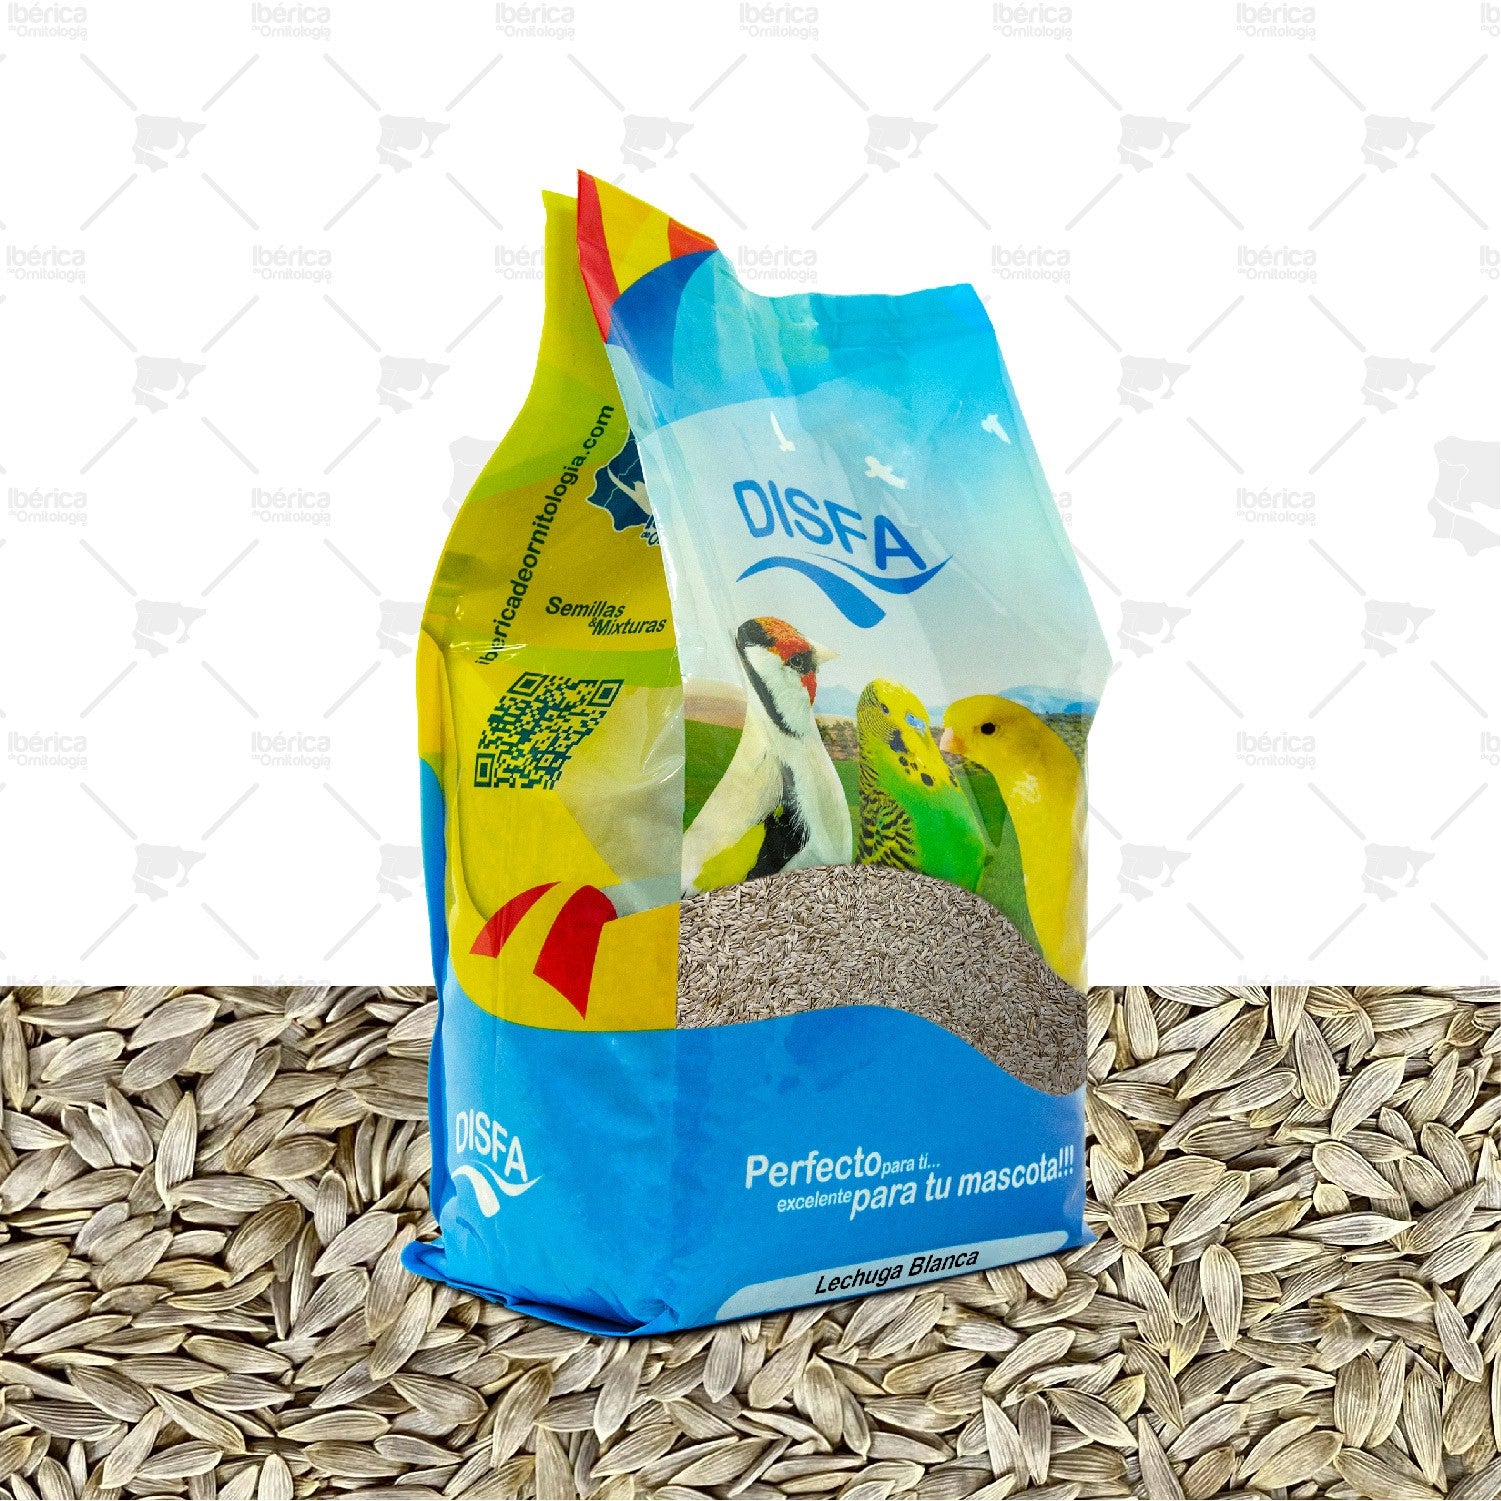 Lechuga Blanca (Disfa) 750 grs semillas complementarias muy refrescantes con aportes de vitaminas y ácido fólico ibericadeornitologia